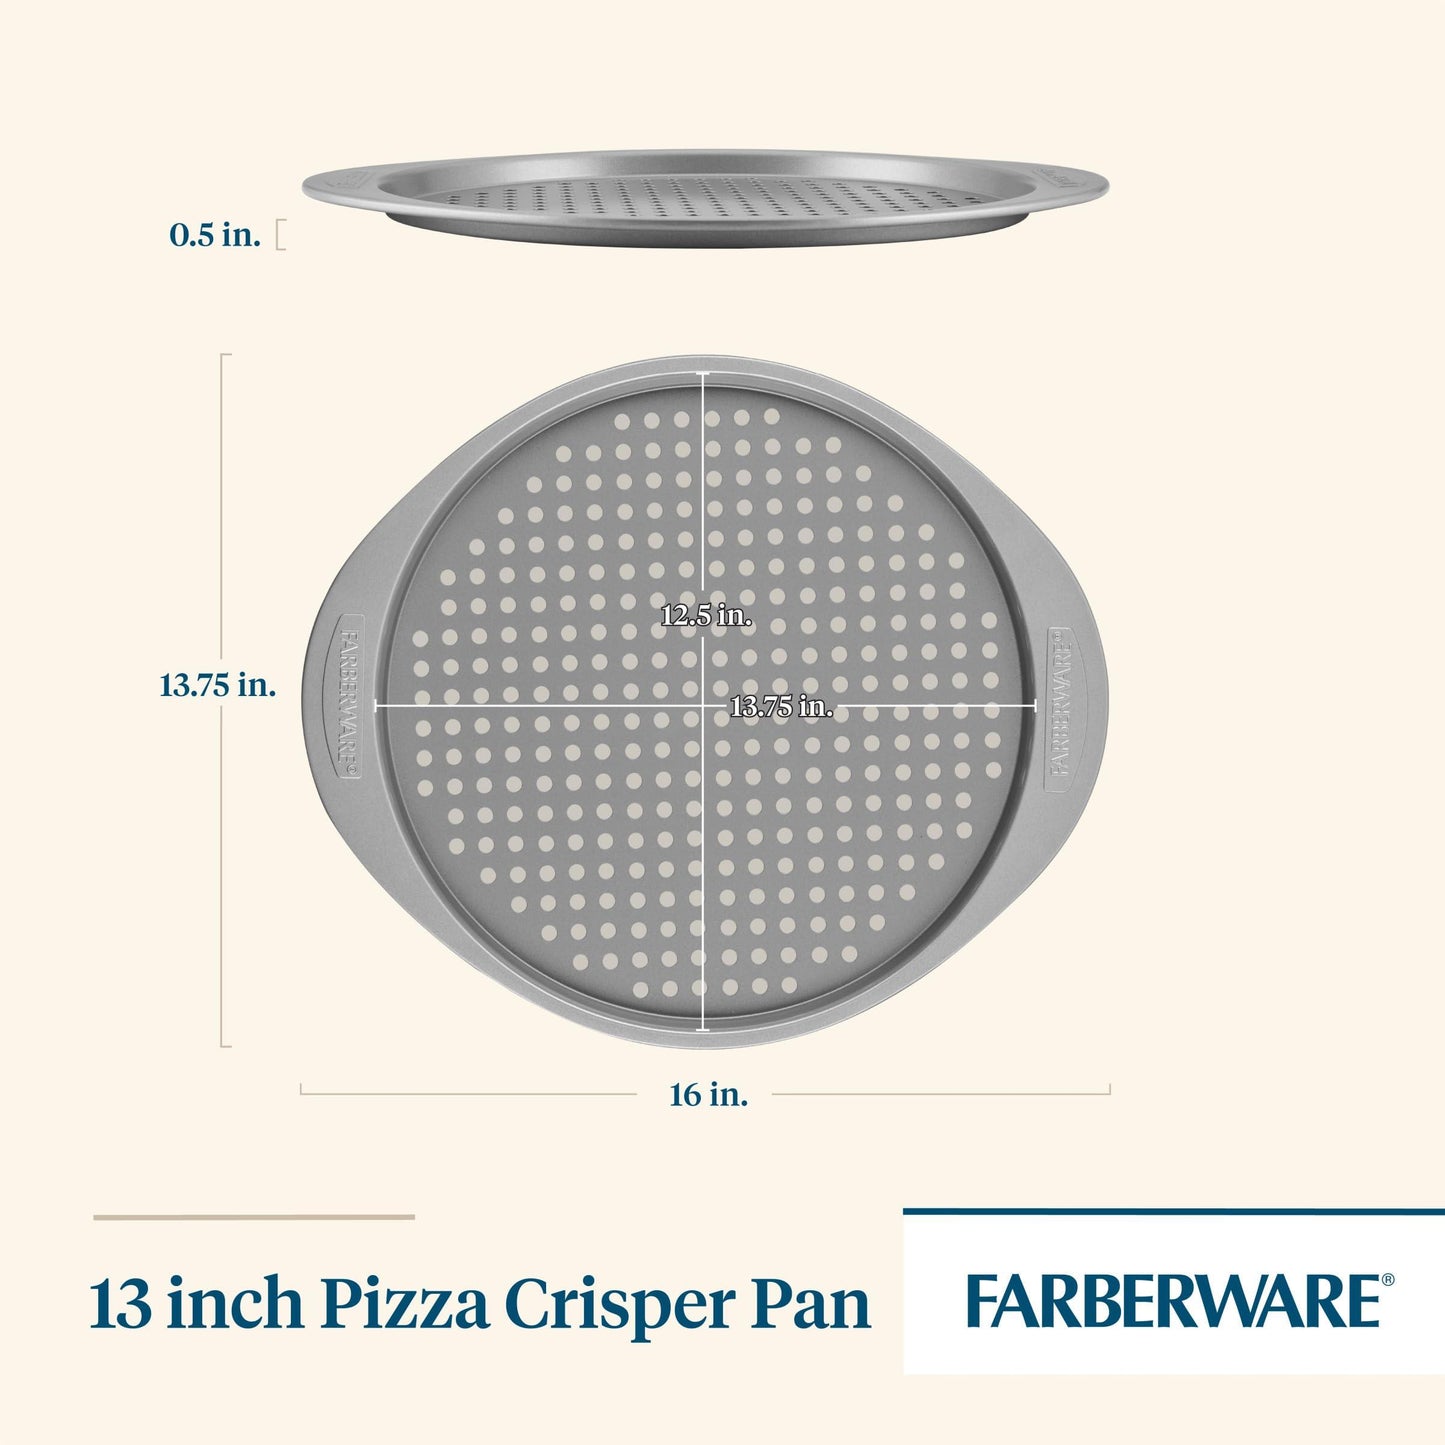 Farberware Nonstick Bakeware Round Pizza/Crisper Pan, 13 Inch, Gray - CookCave